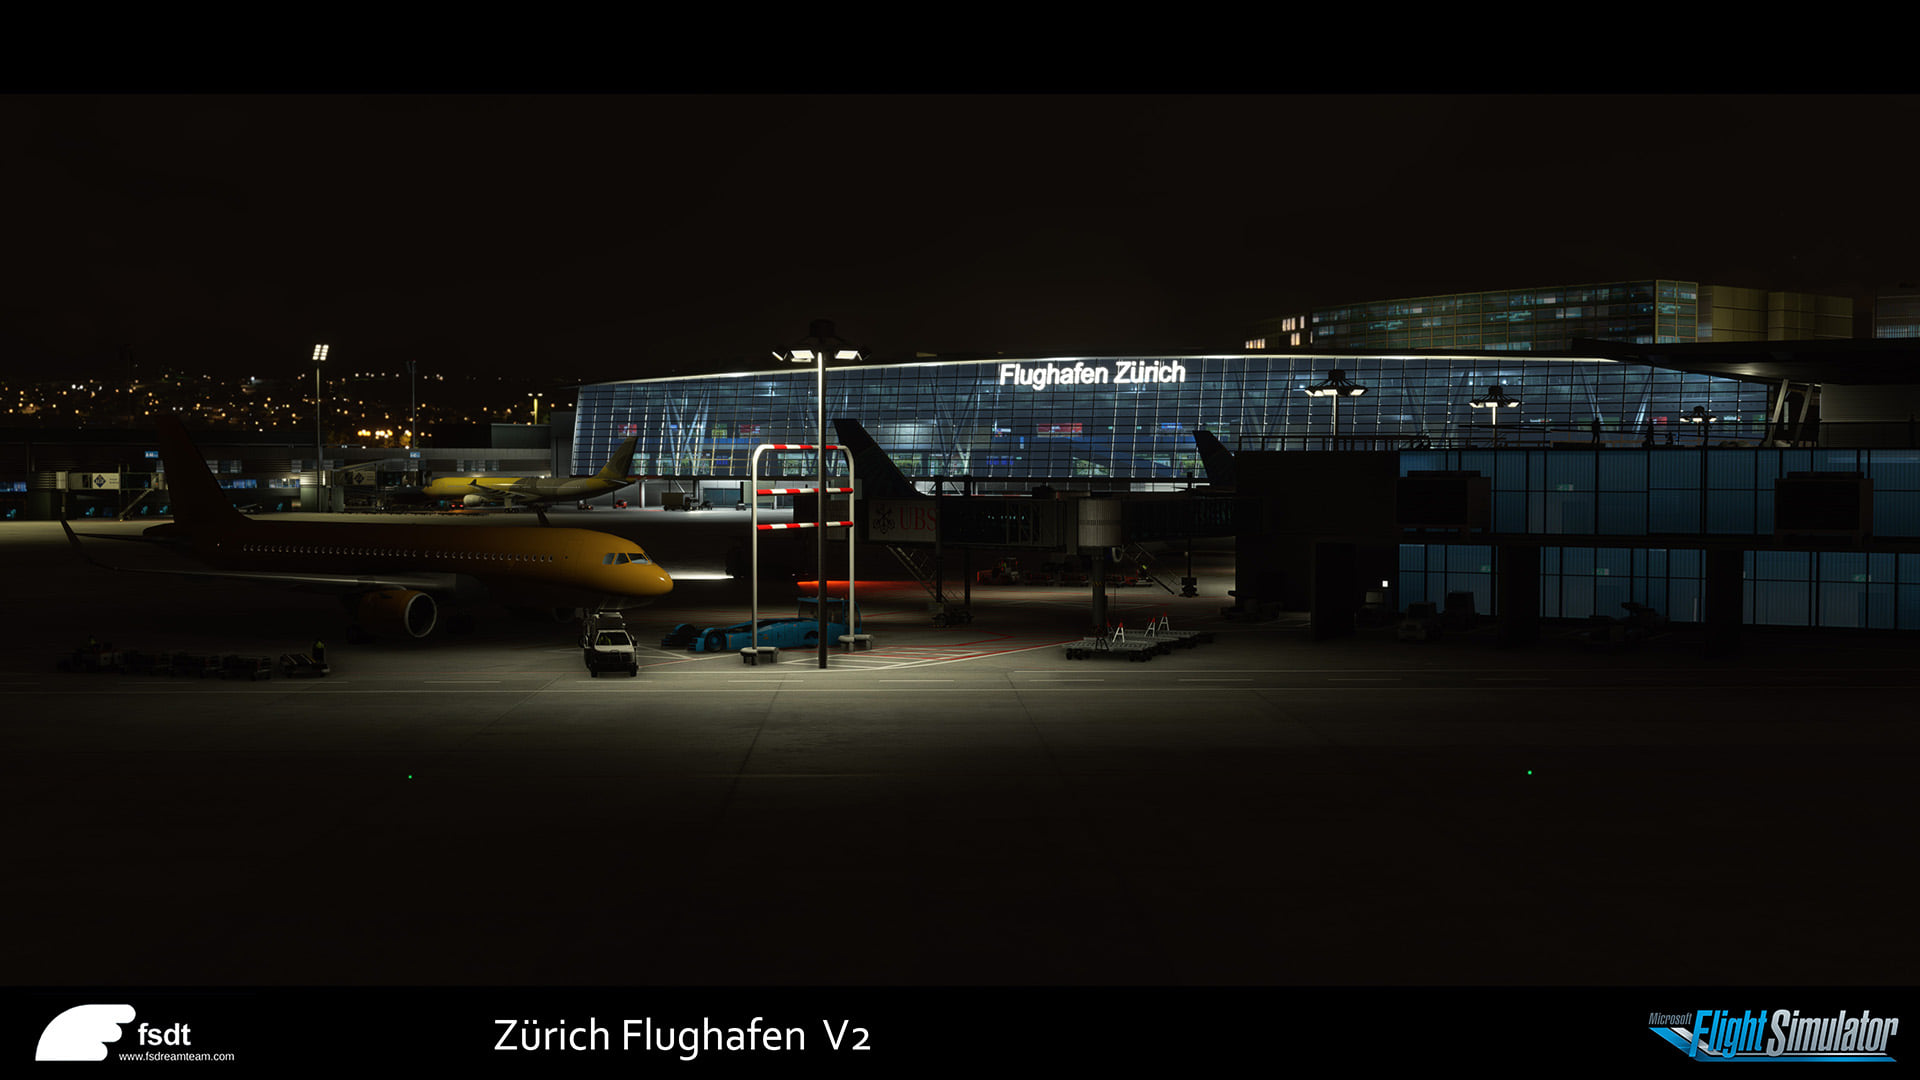 Zurich airport msfs 9